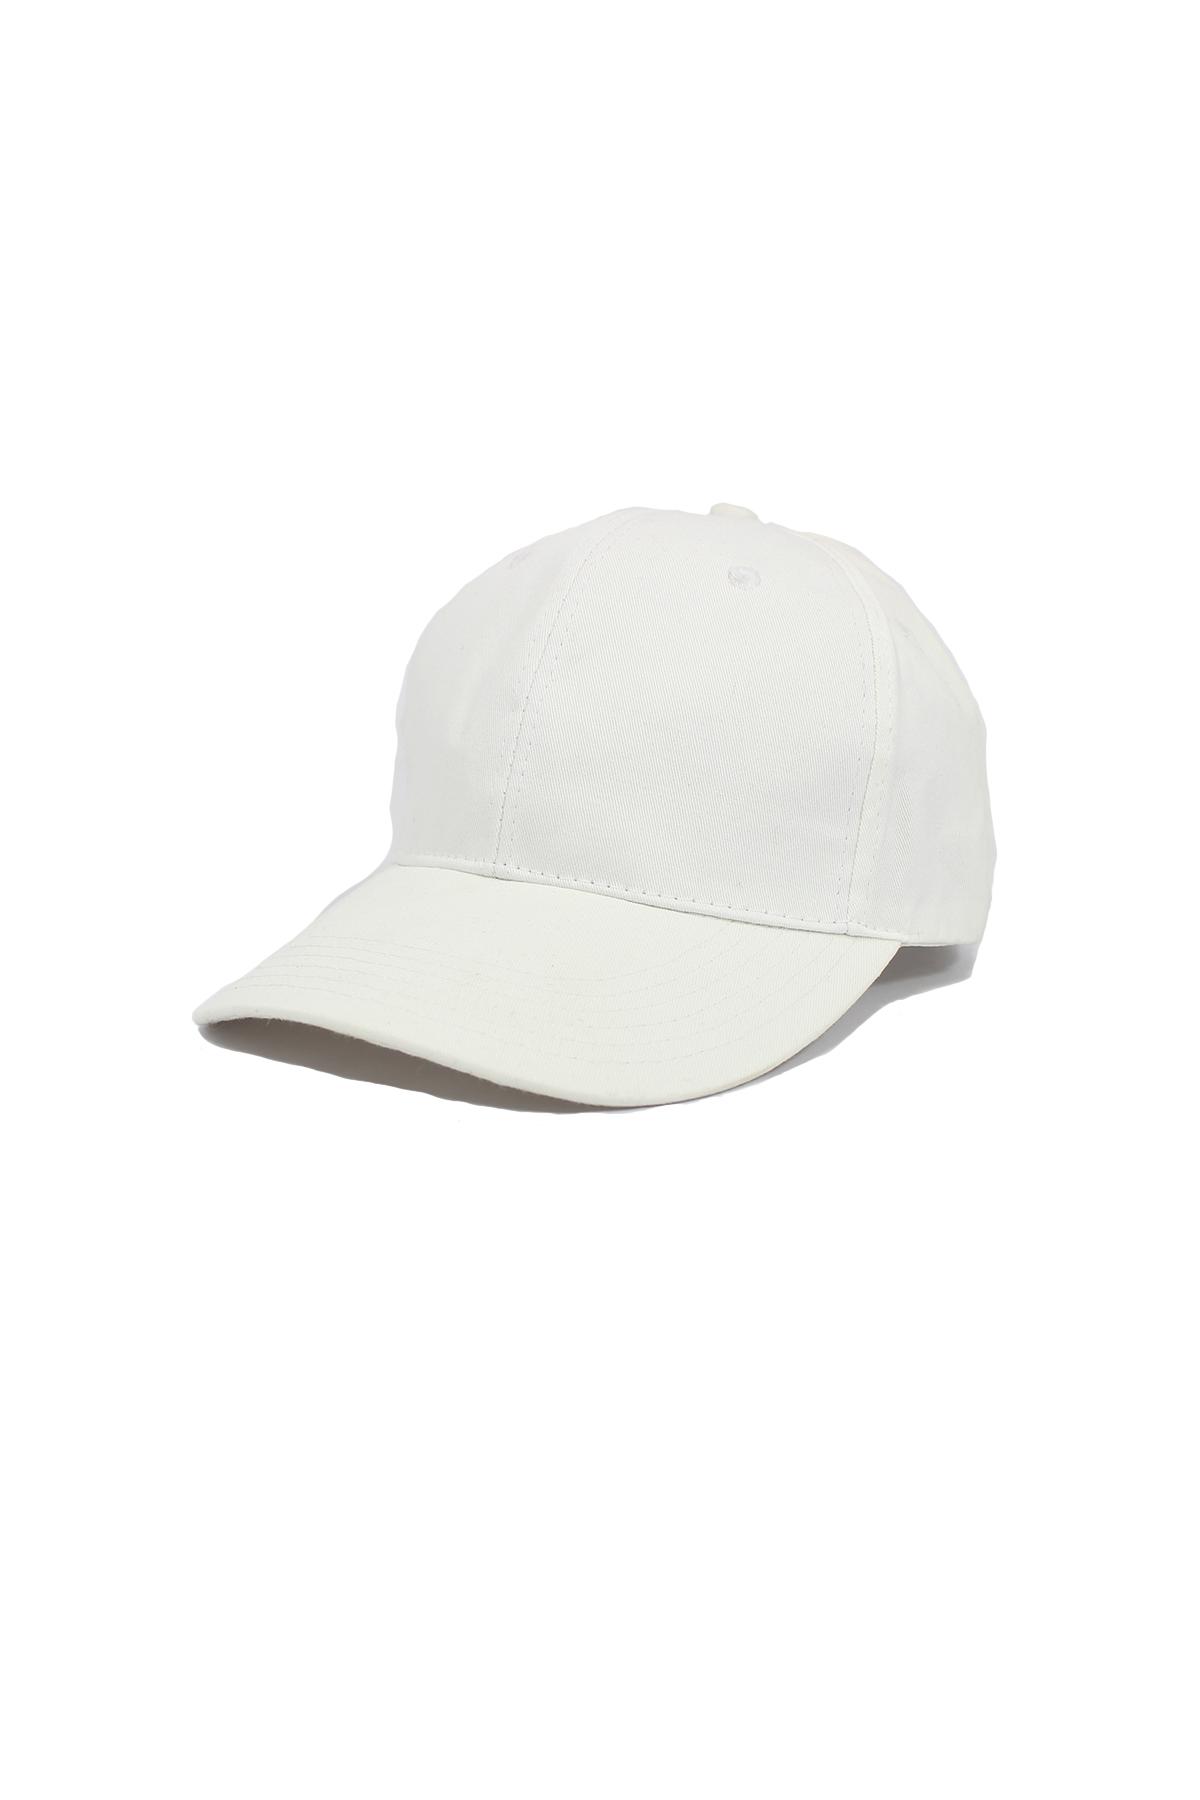 Sade Beyaz (Cırtcırtlı) Şapka